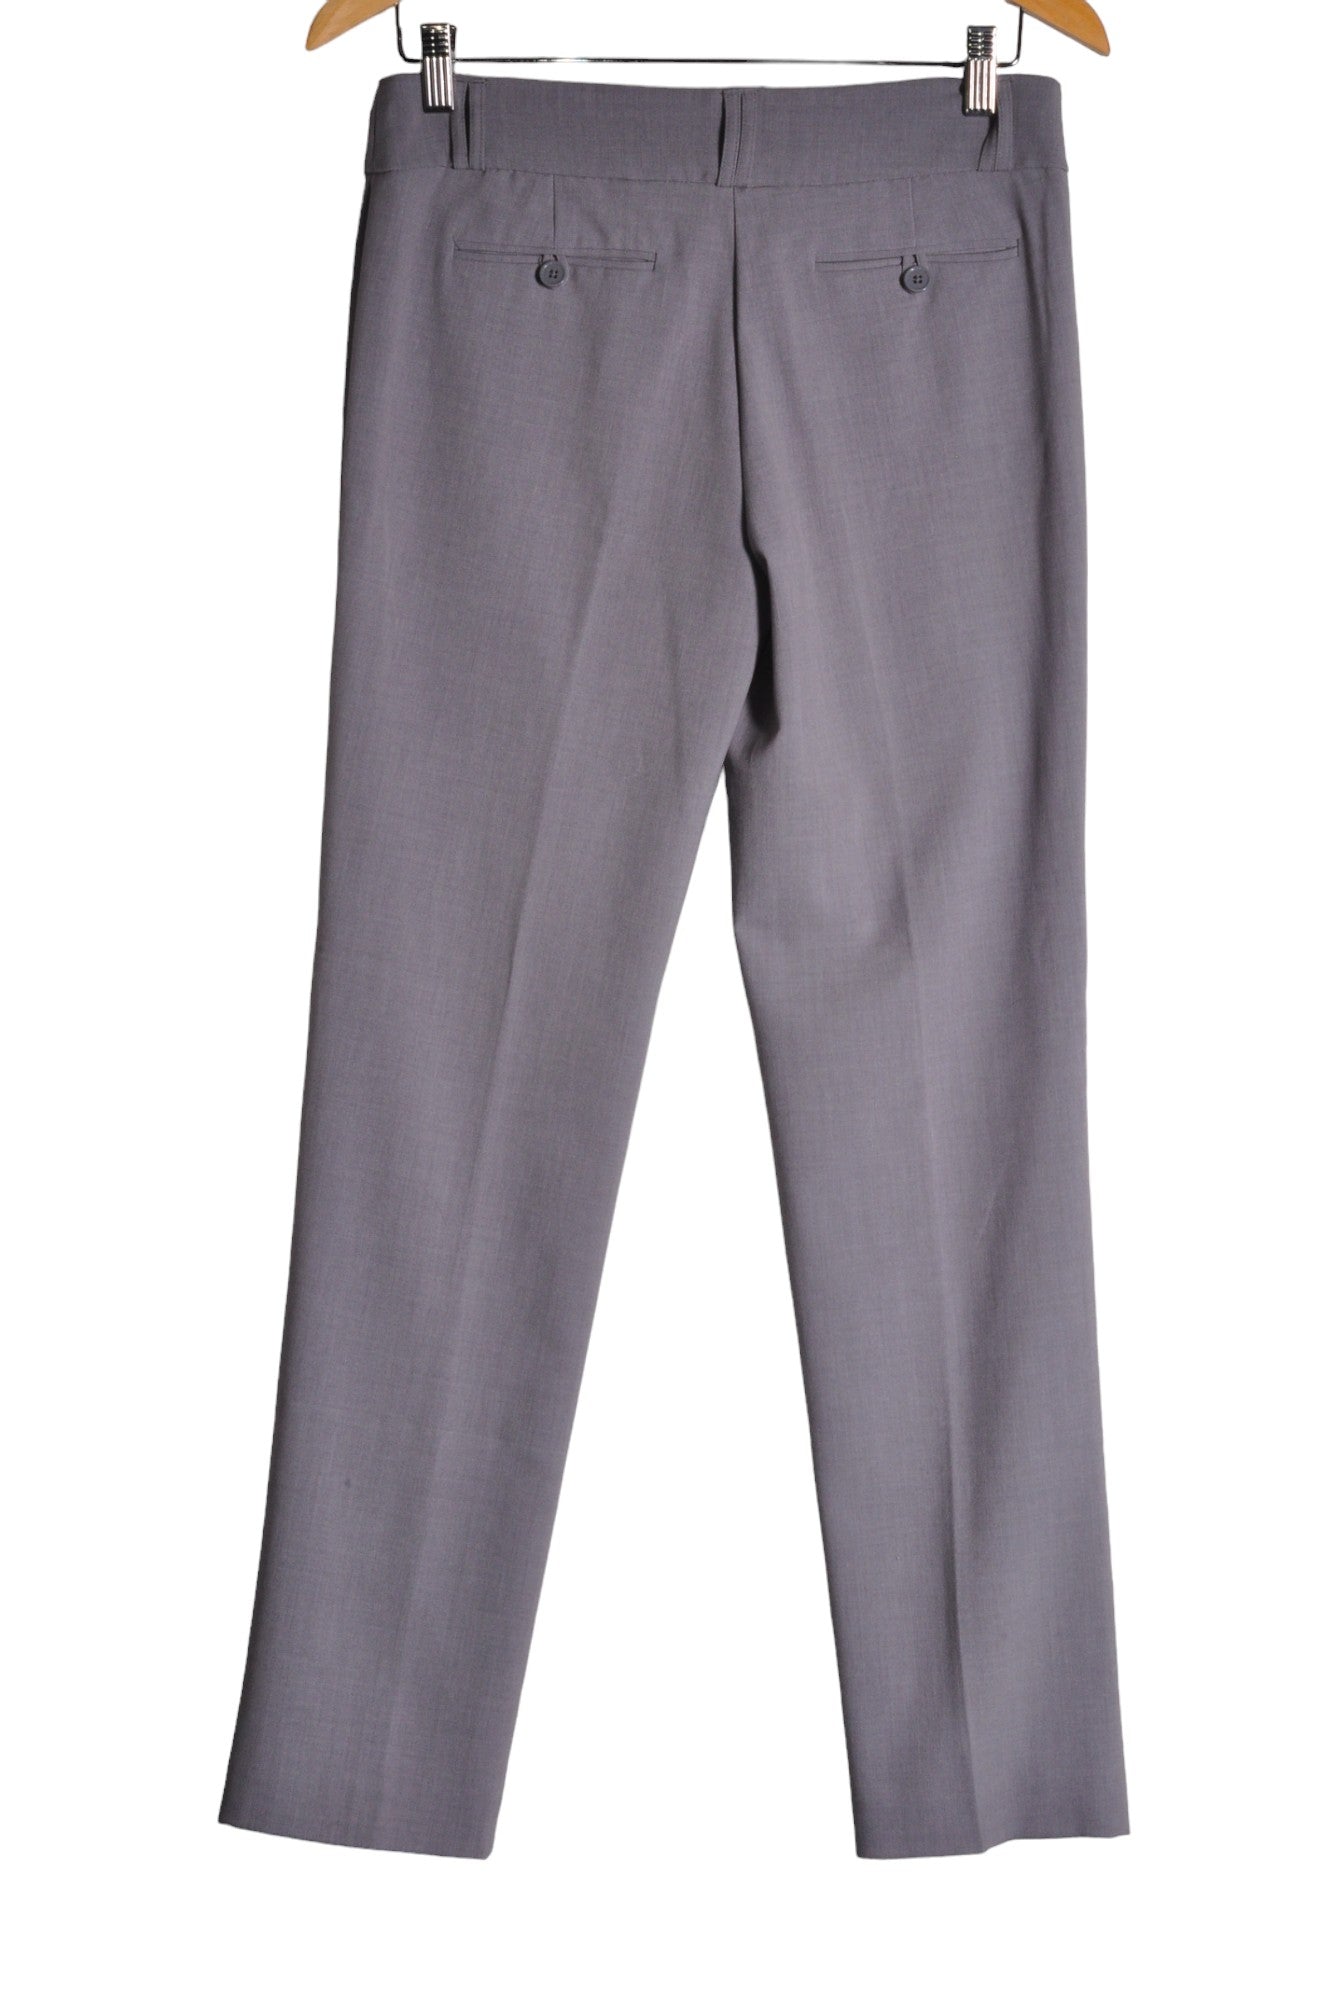 ANNE KLEIN Women Work Pants Regular fit in Gray - Size 2 | 39.6 $ KOOP